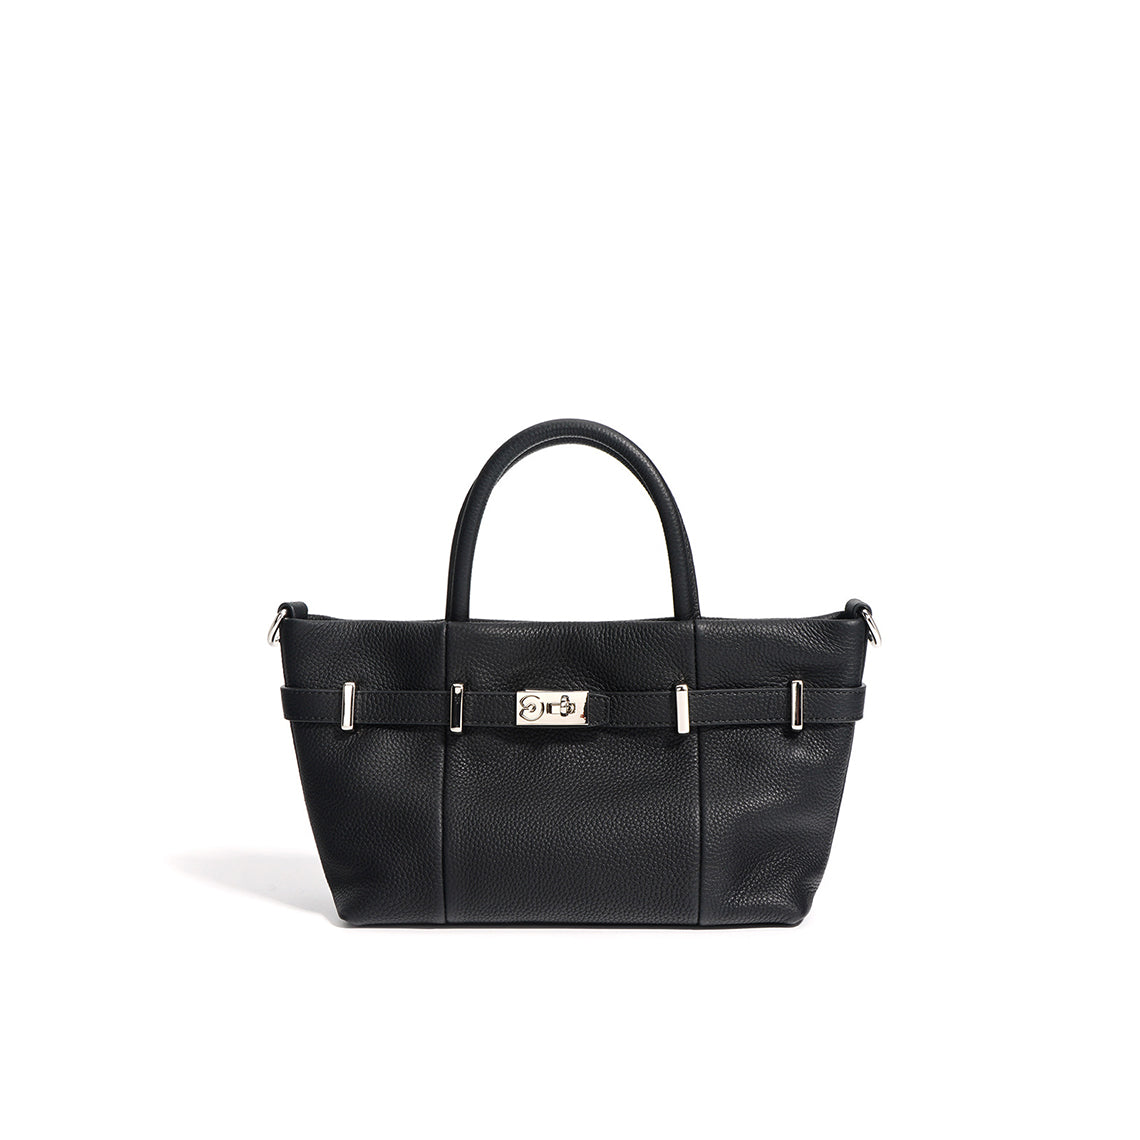 Black Leather Handbag for Women | Inspired Designer Bag